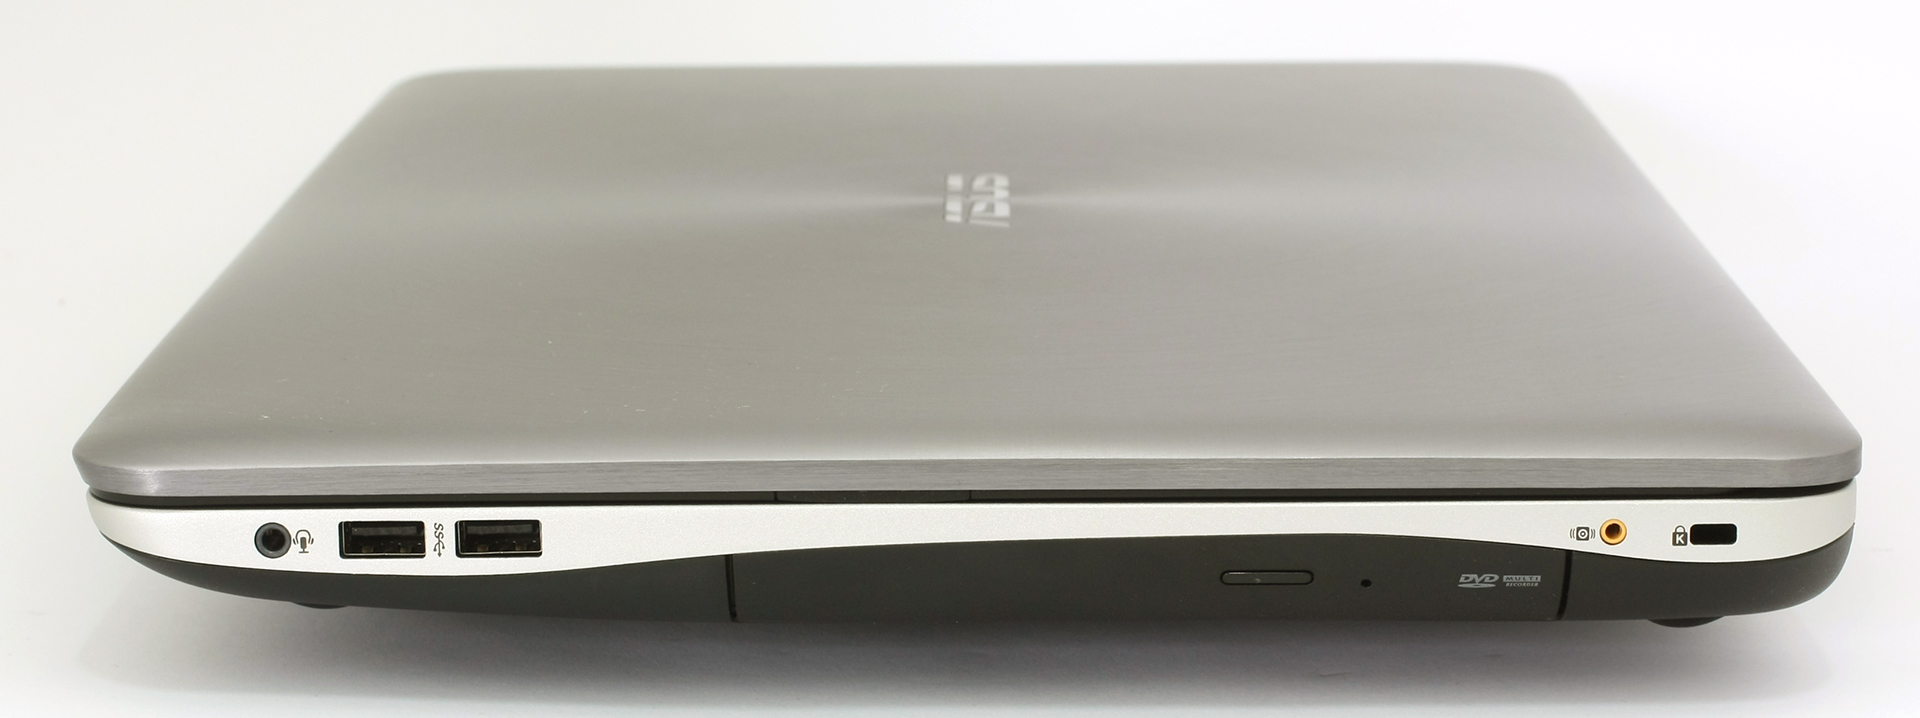 Asus N71JV, análisis de un portátil de 17 pulgadas con doble gráfica y  NVidia Optimus